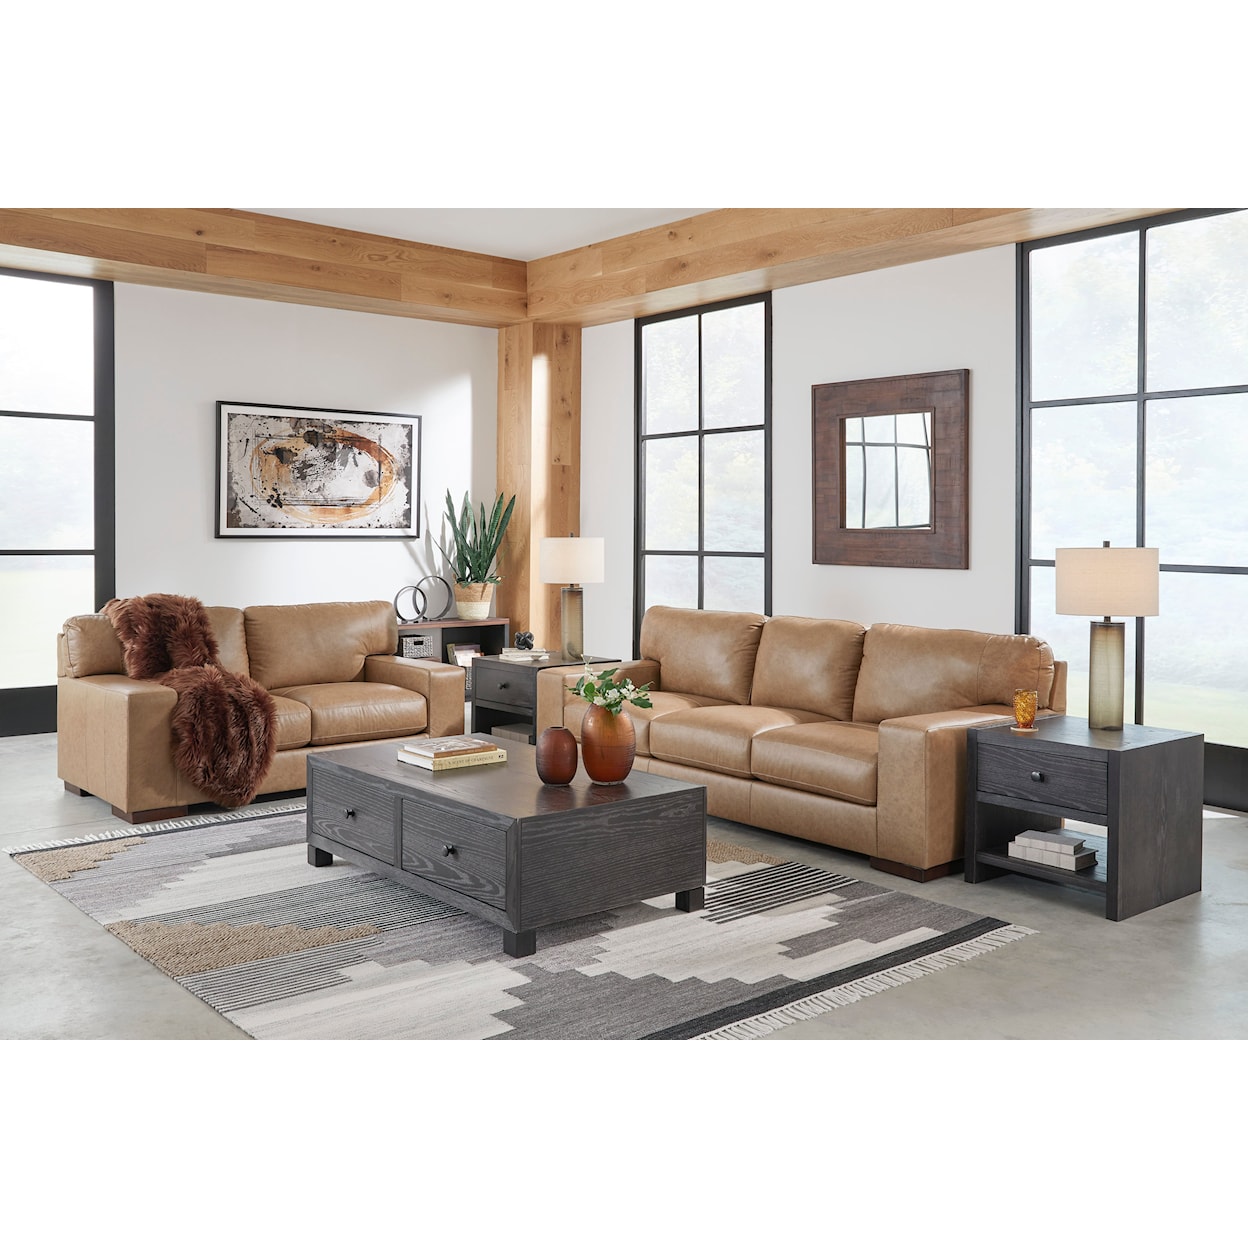 StyleLine Lombardia Living Room Set